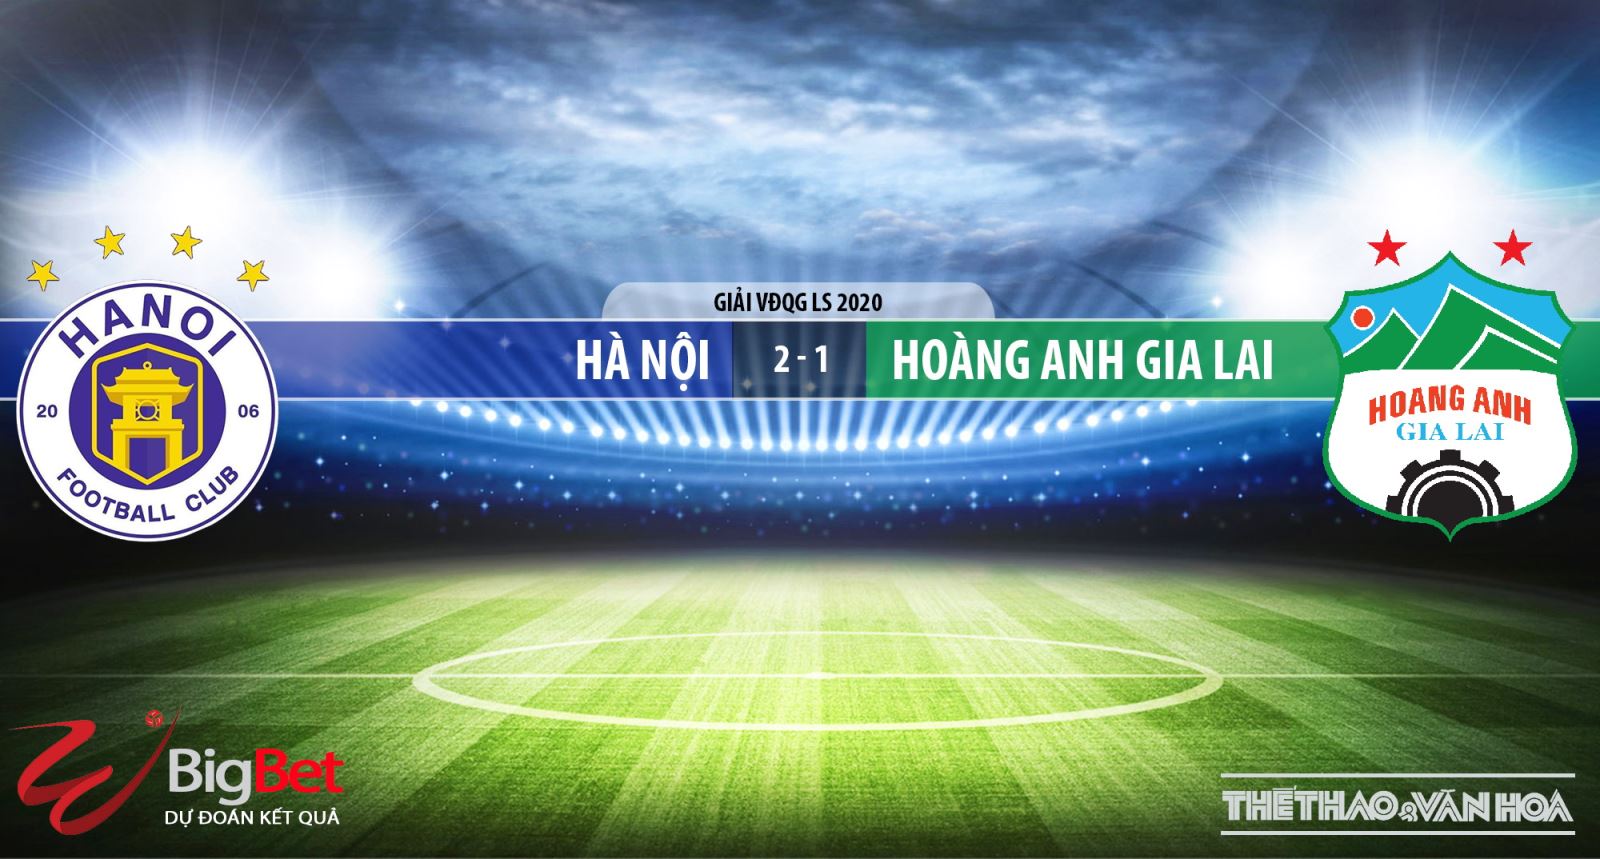 Hà Nội vs HAGL, HAGL, Hà Nội, trực tiếp bóng đá, dự đoán, nhận định Hà Nội vs HAGL, kèo bóng đá, nhận định bóng đá bóng đá, BĐTV